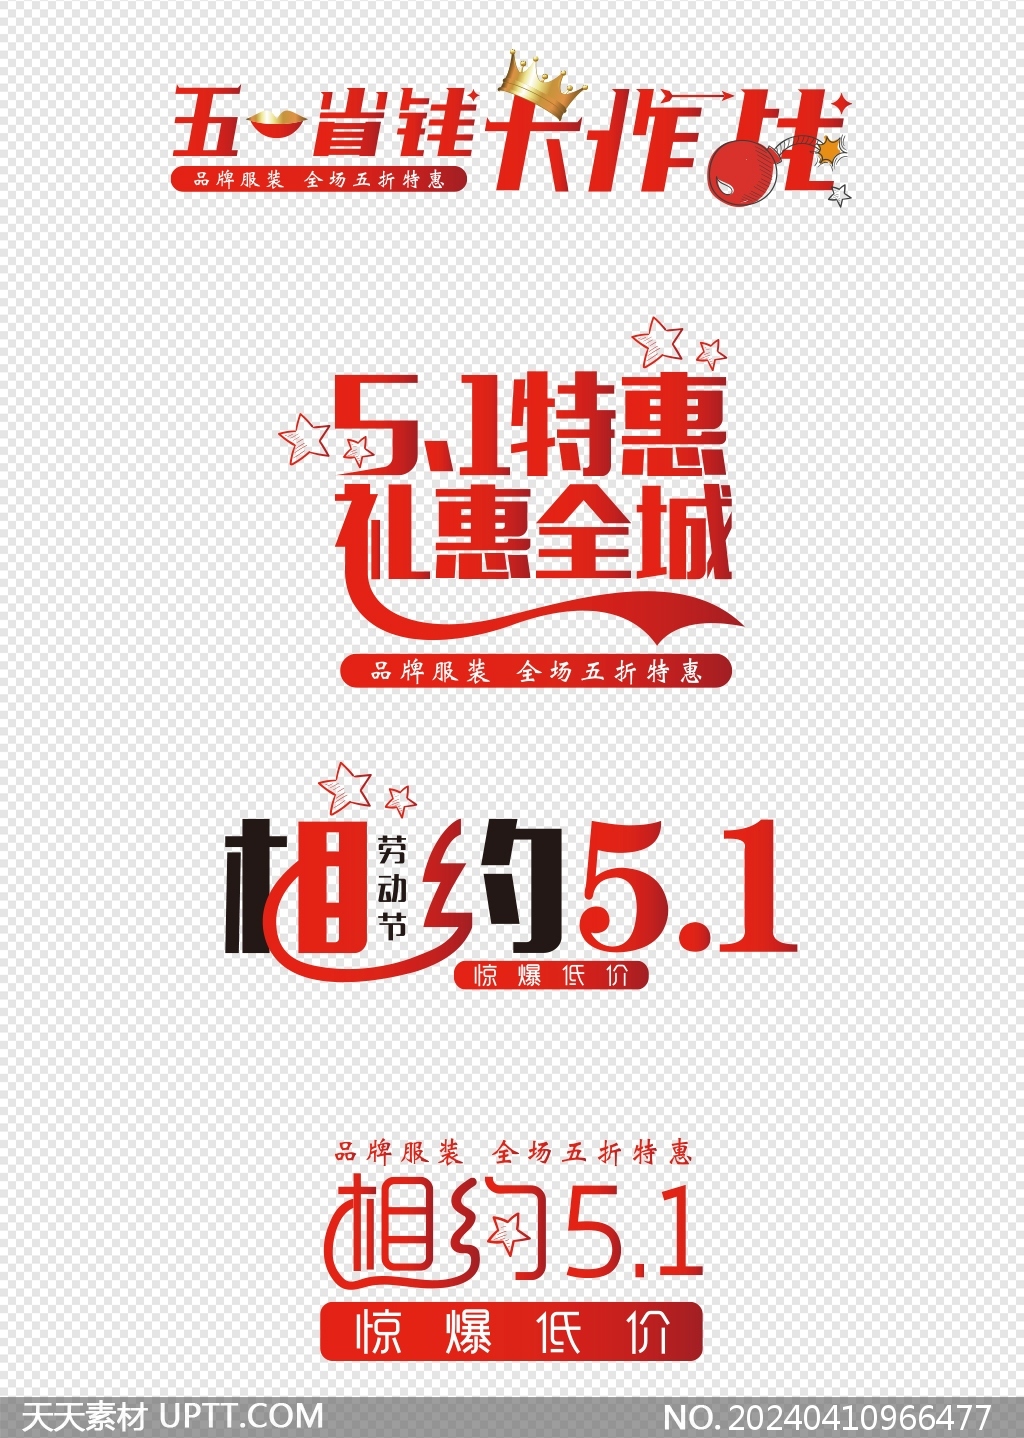 51劳动节促销活动海报标题字体矢量素材